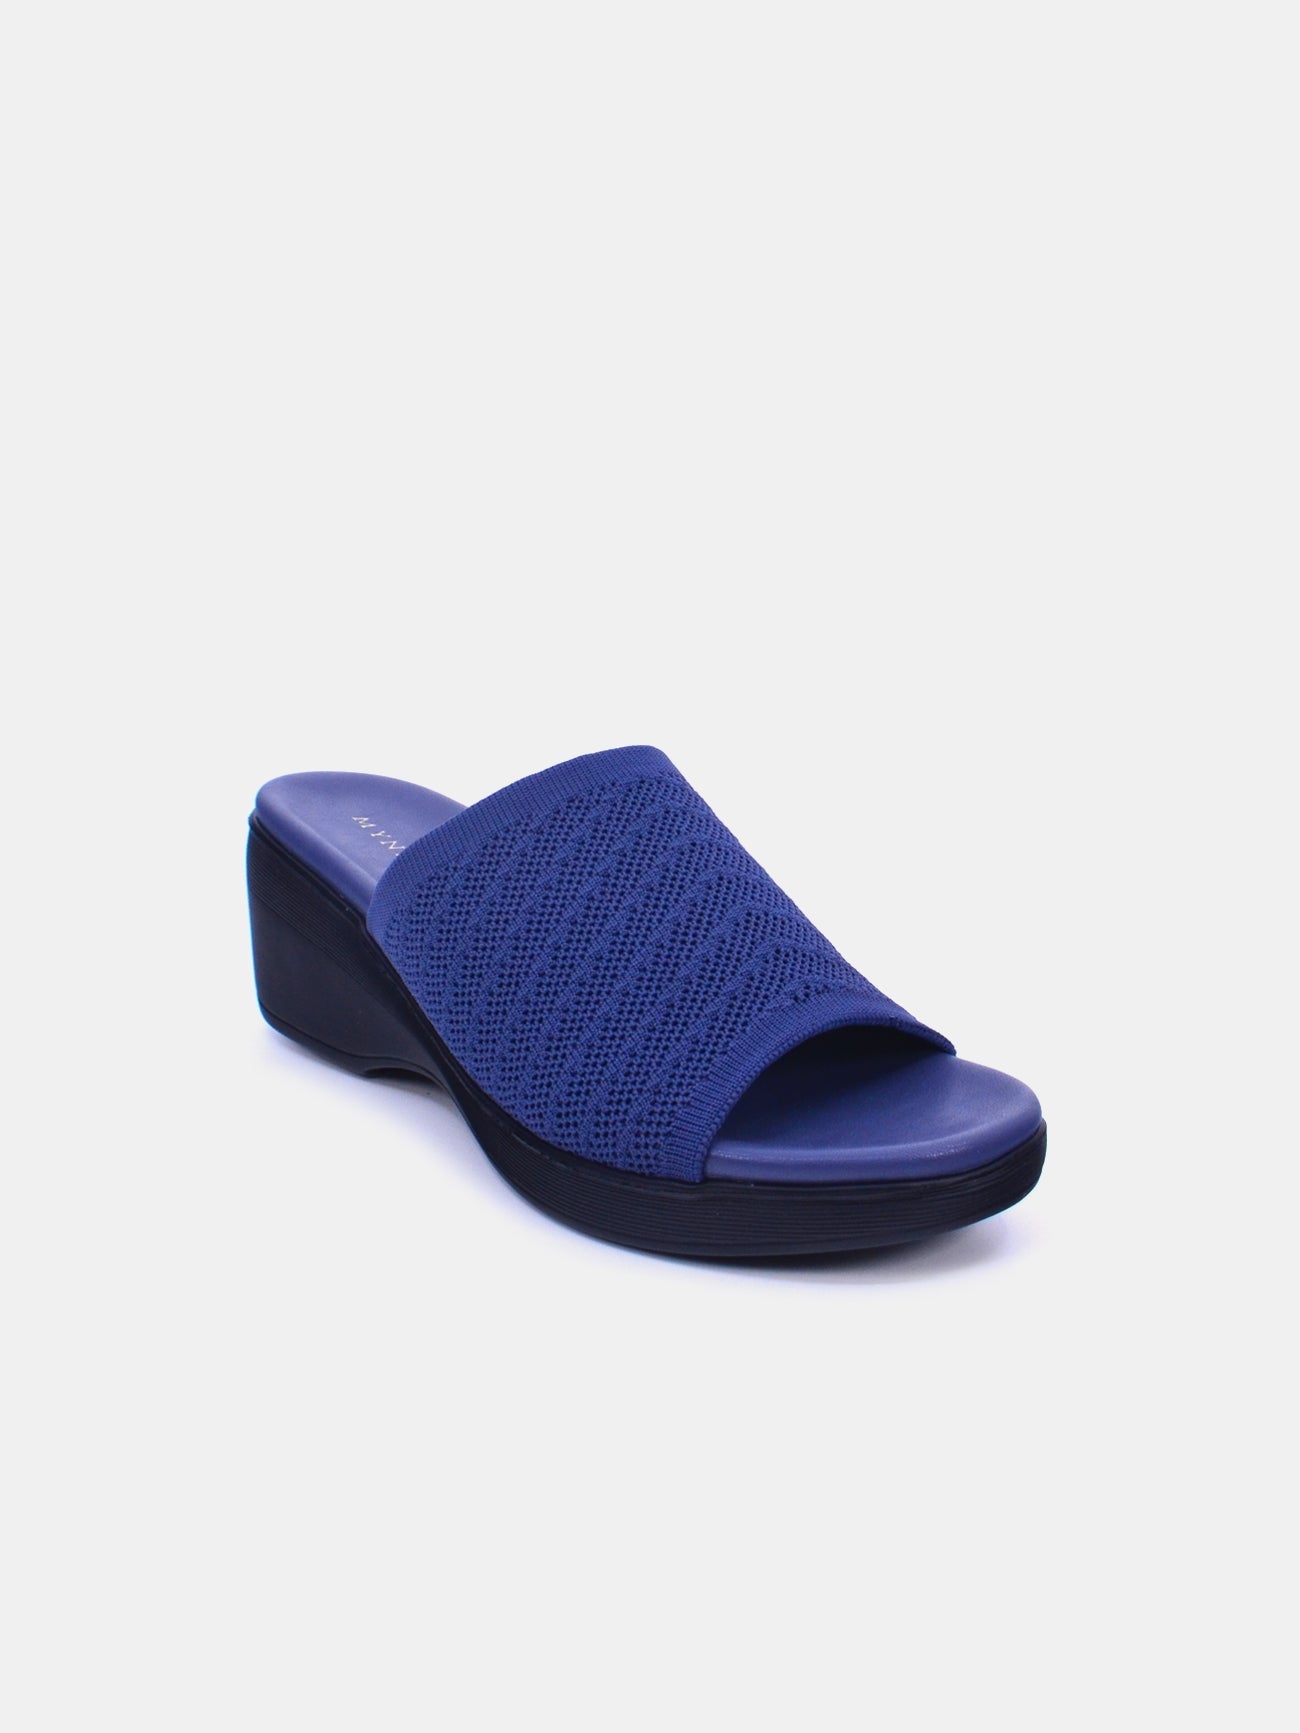 Mynaal Oliviera Women's Wedge Sandals #color_Navy